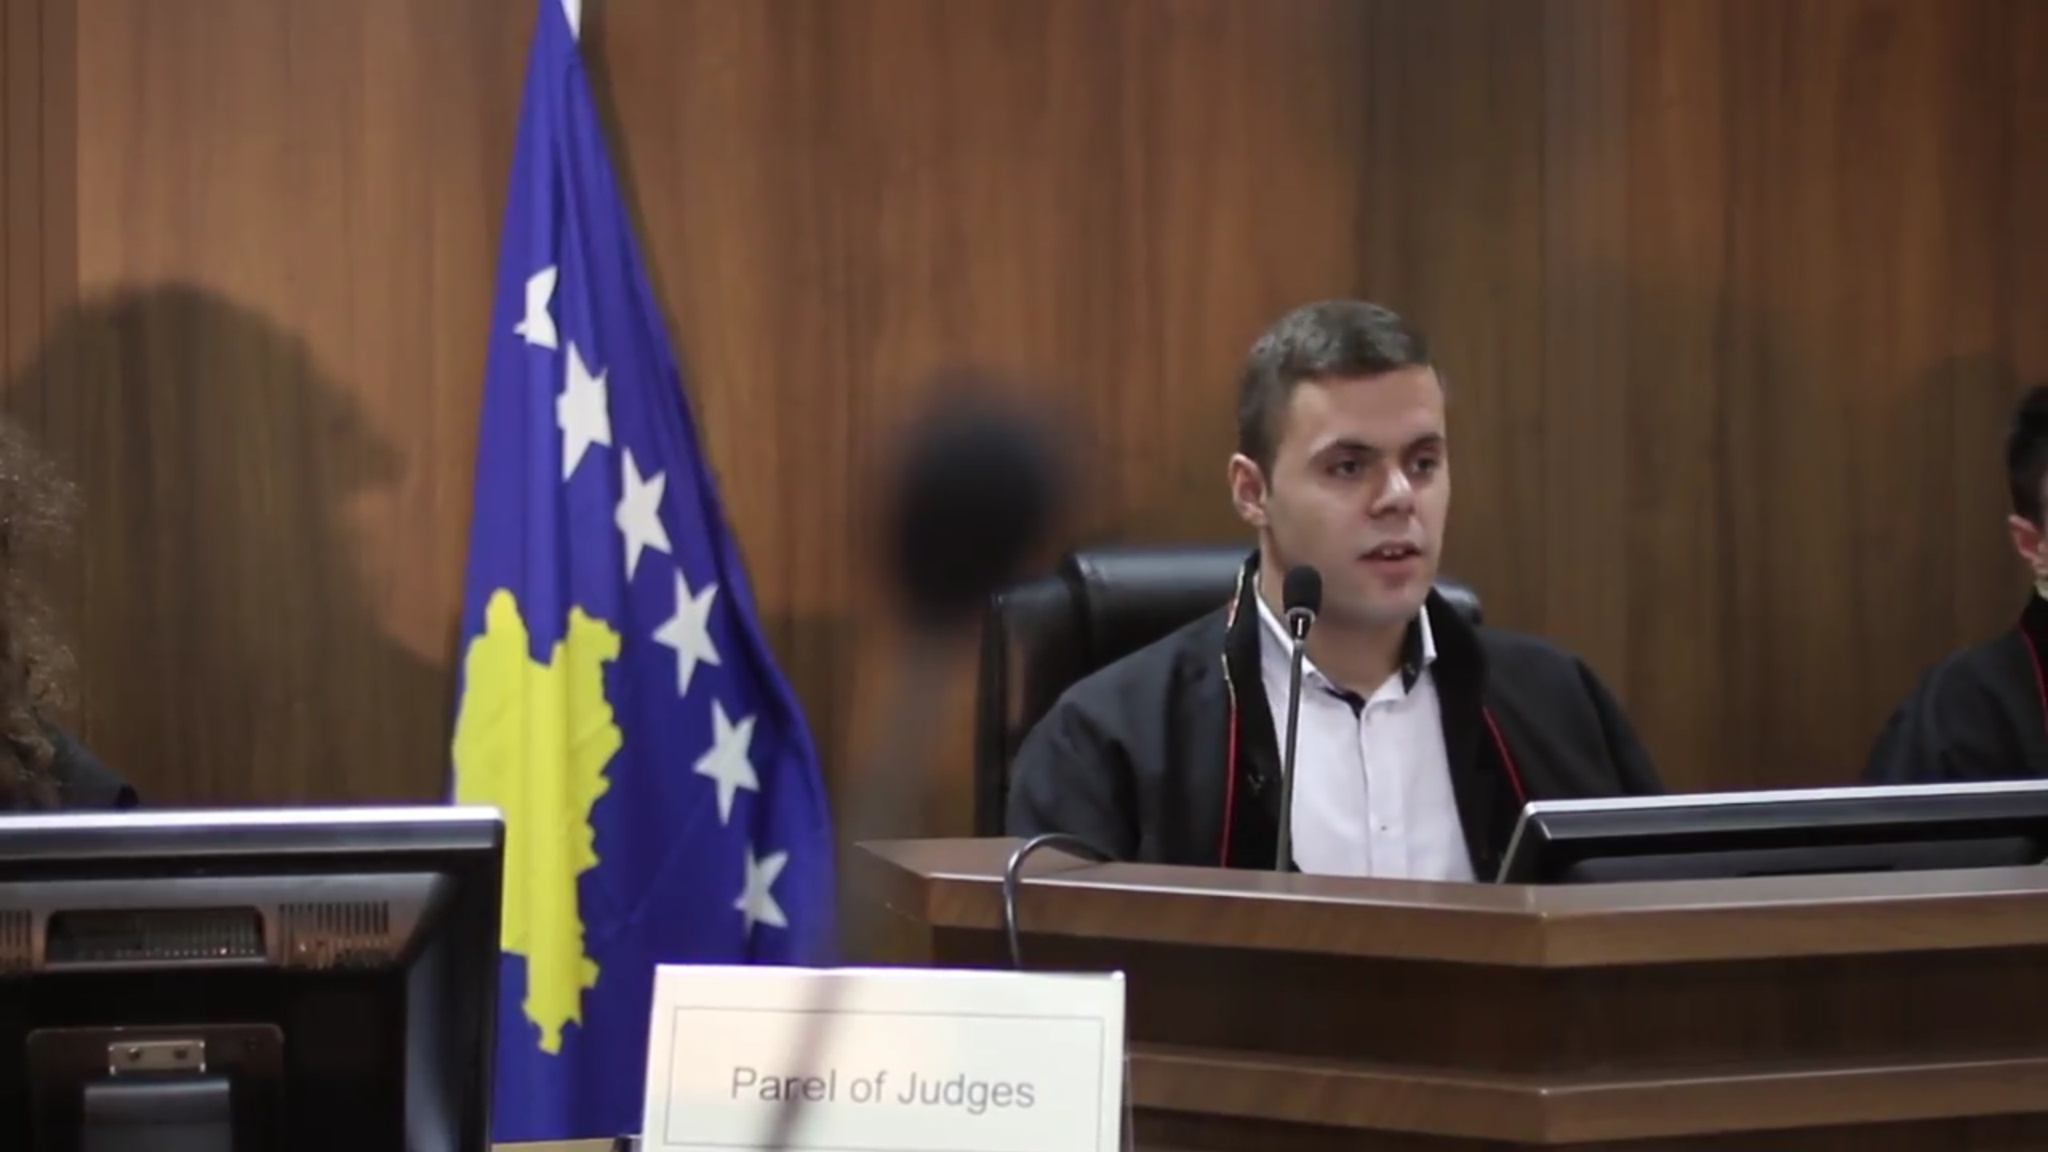 Seancë gjyqësore e simuluar nga praktikantët e Gjykatës Themelore të Gjilanit